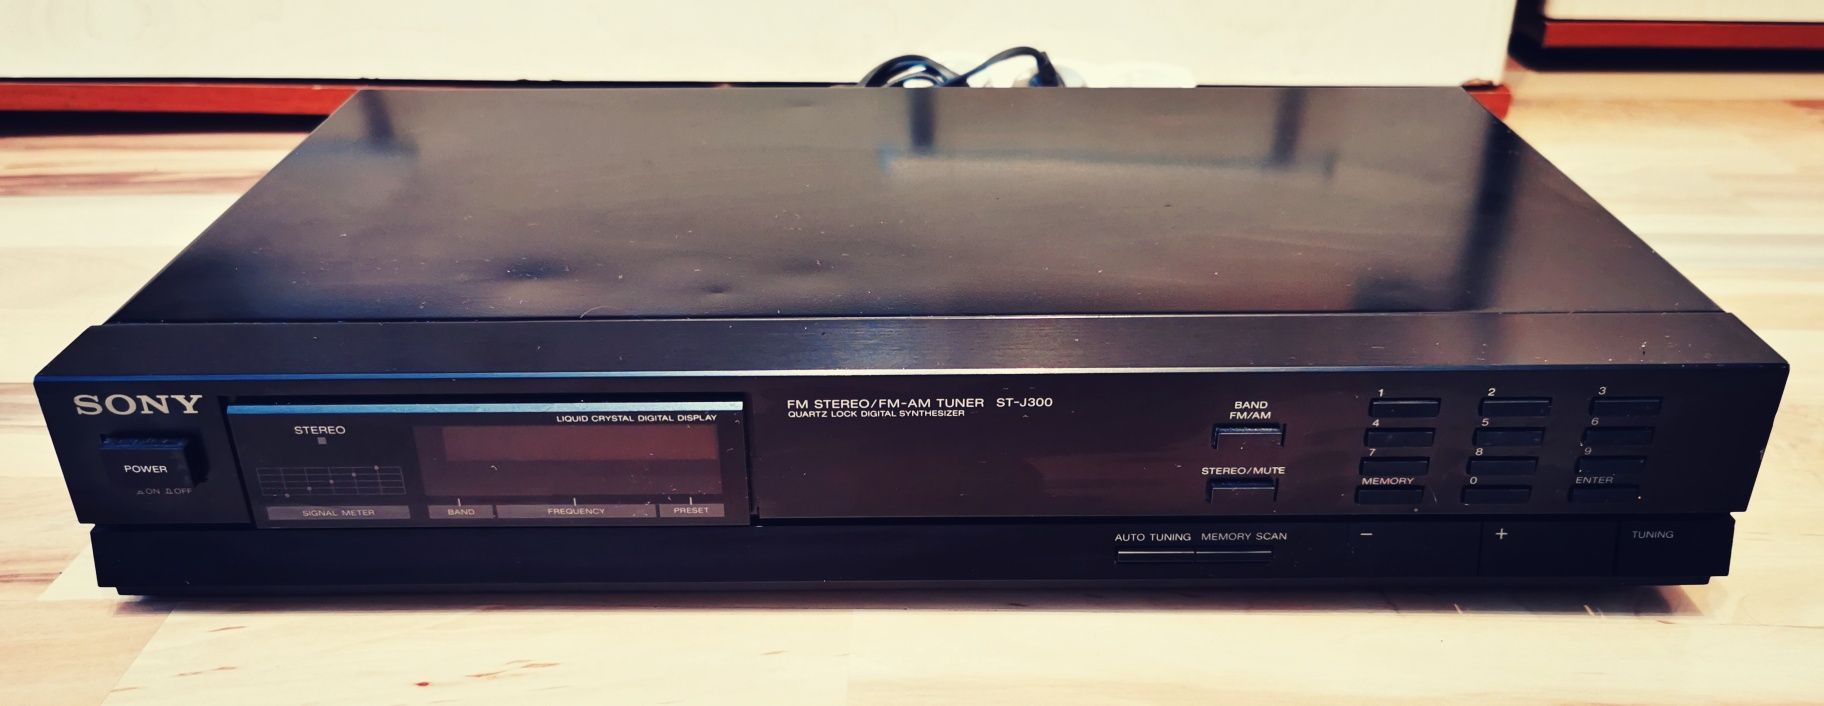 Sony stereo fm am tuner ST-J300 retro vintage anii 80
St